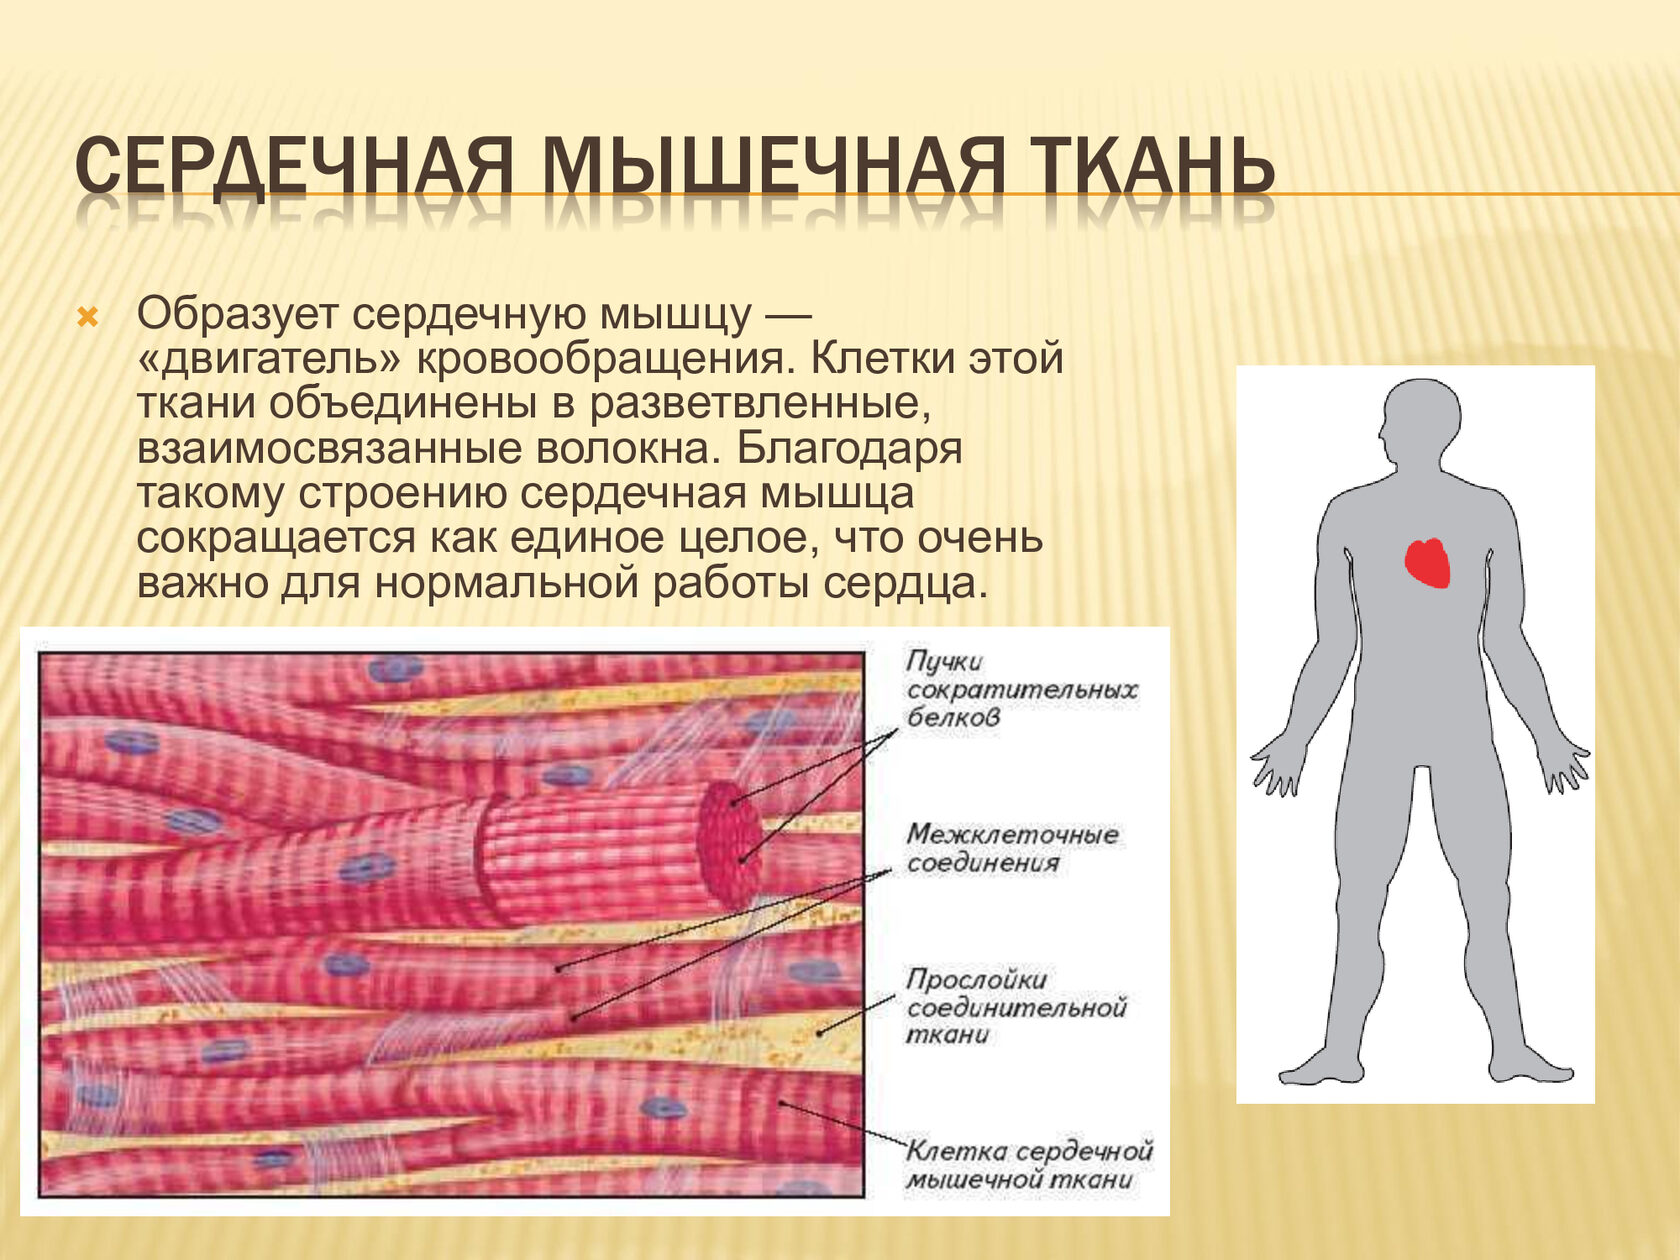 Строение сердечной мышечной ткани